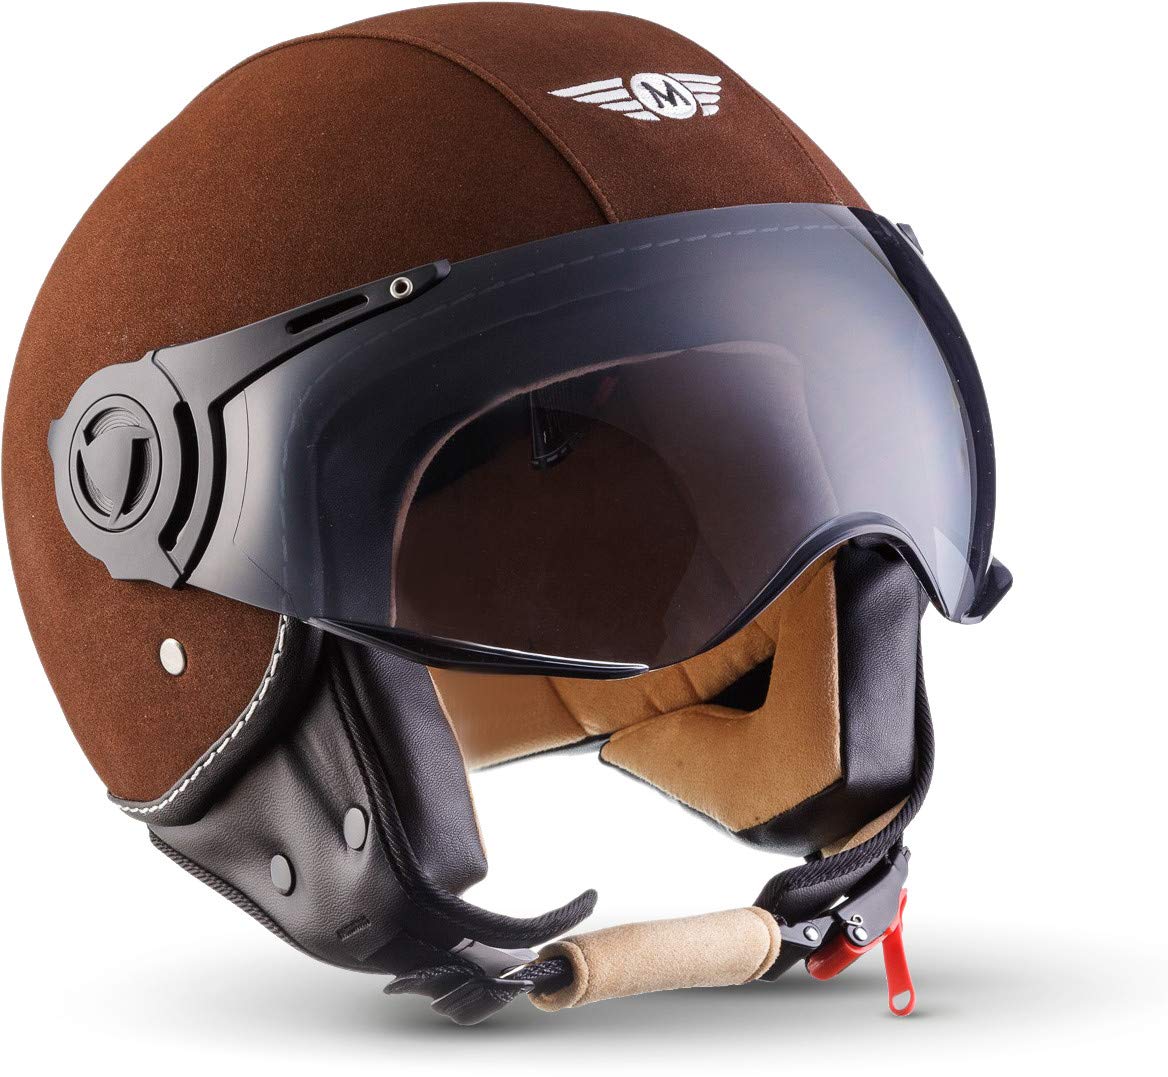 Moto Helmets® H44 „Leather Brown“ · Jet-Helm · Motorrad-Helm Roller-Helm Scooter-Helm Bobber Mofa-Helm Chopper Retro Cruiser Vintage Pilot Biker · ECE Visier Schnellverschluss Tasche XS (53-54cm) von Moto Helmets